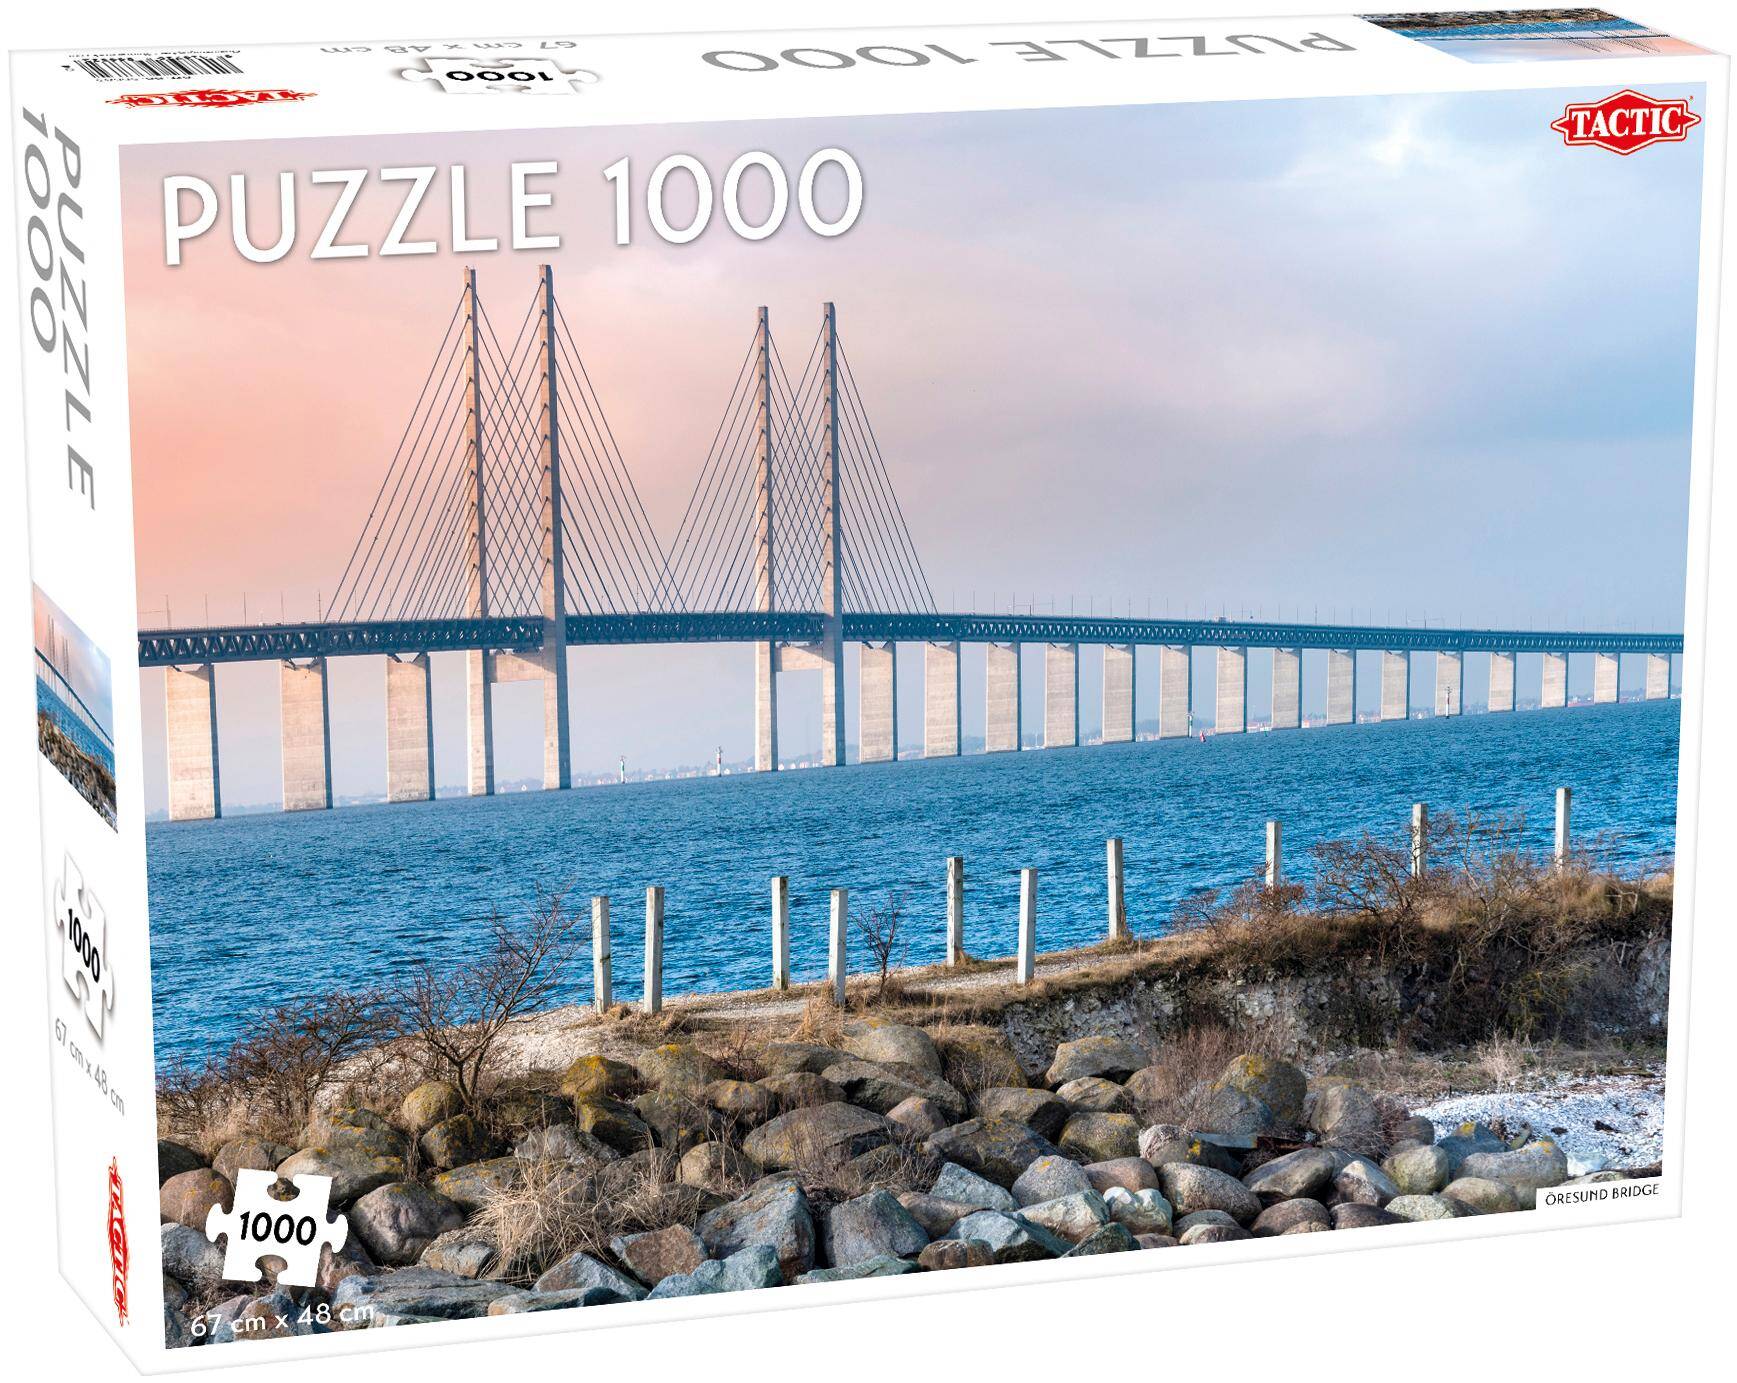 Puzzle 1000 Around the World Northern Stars Öresund Bridge